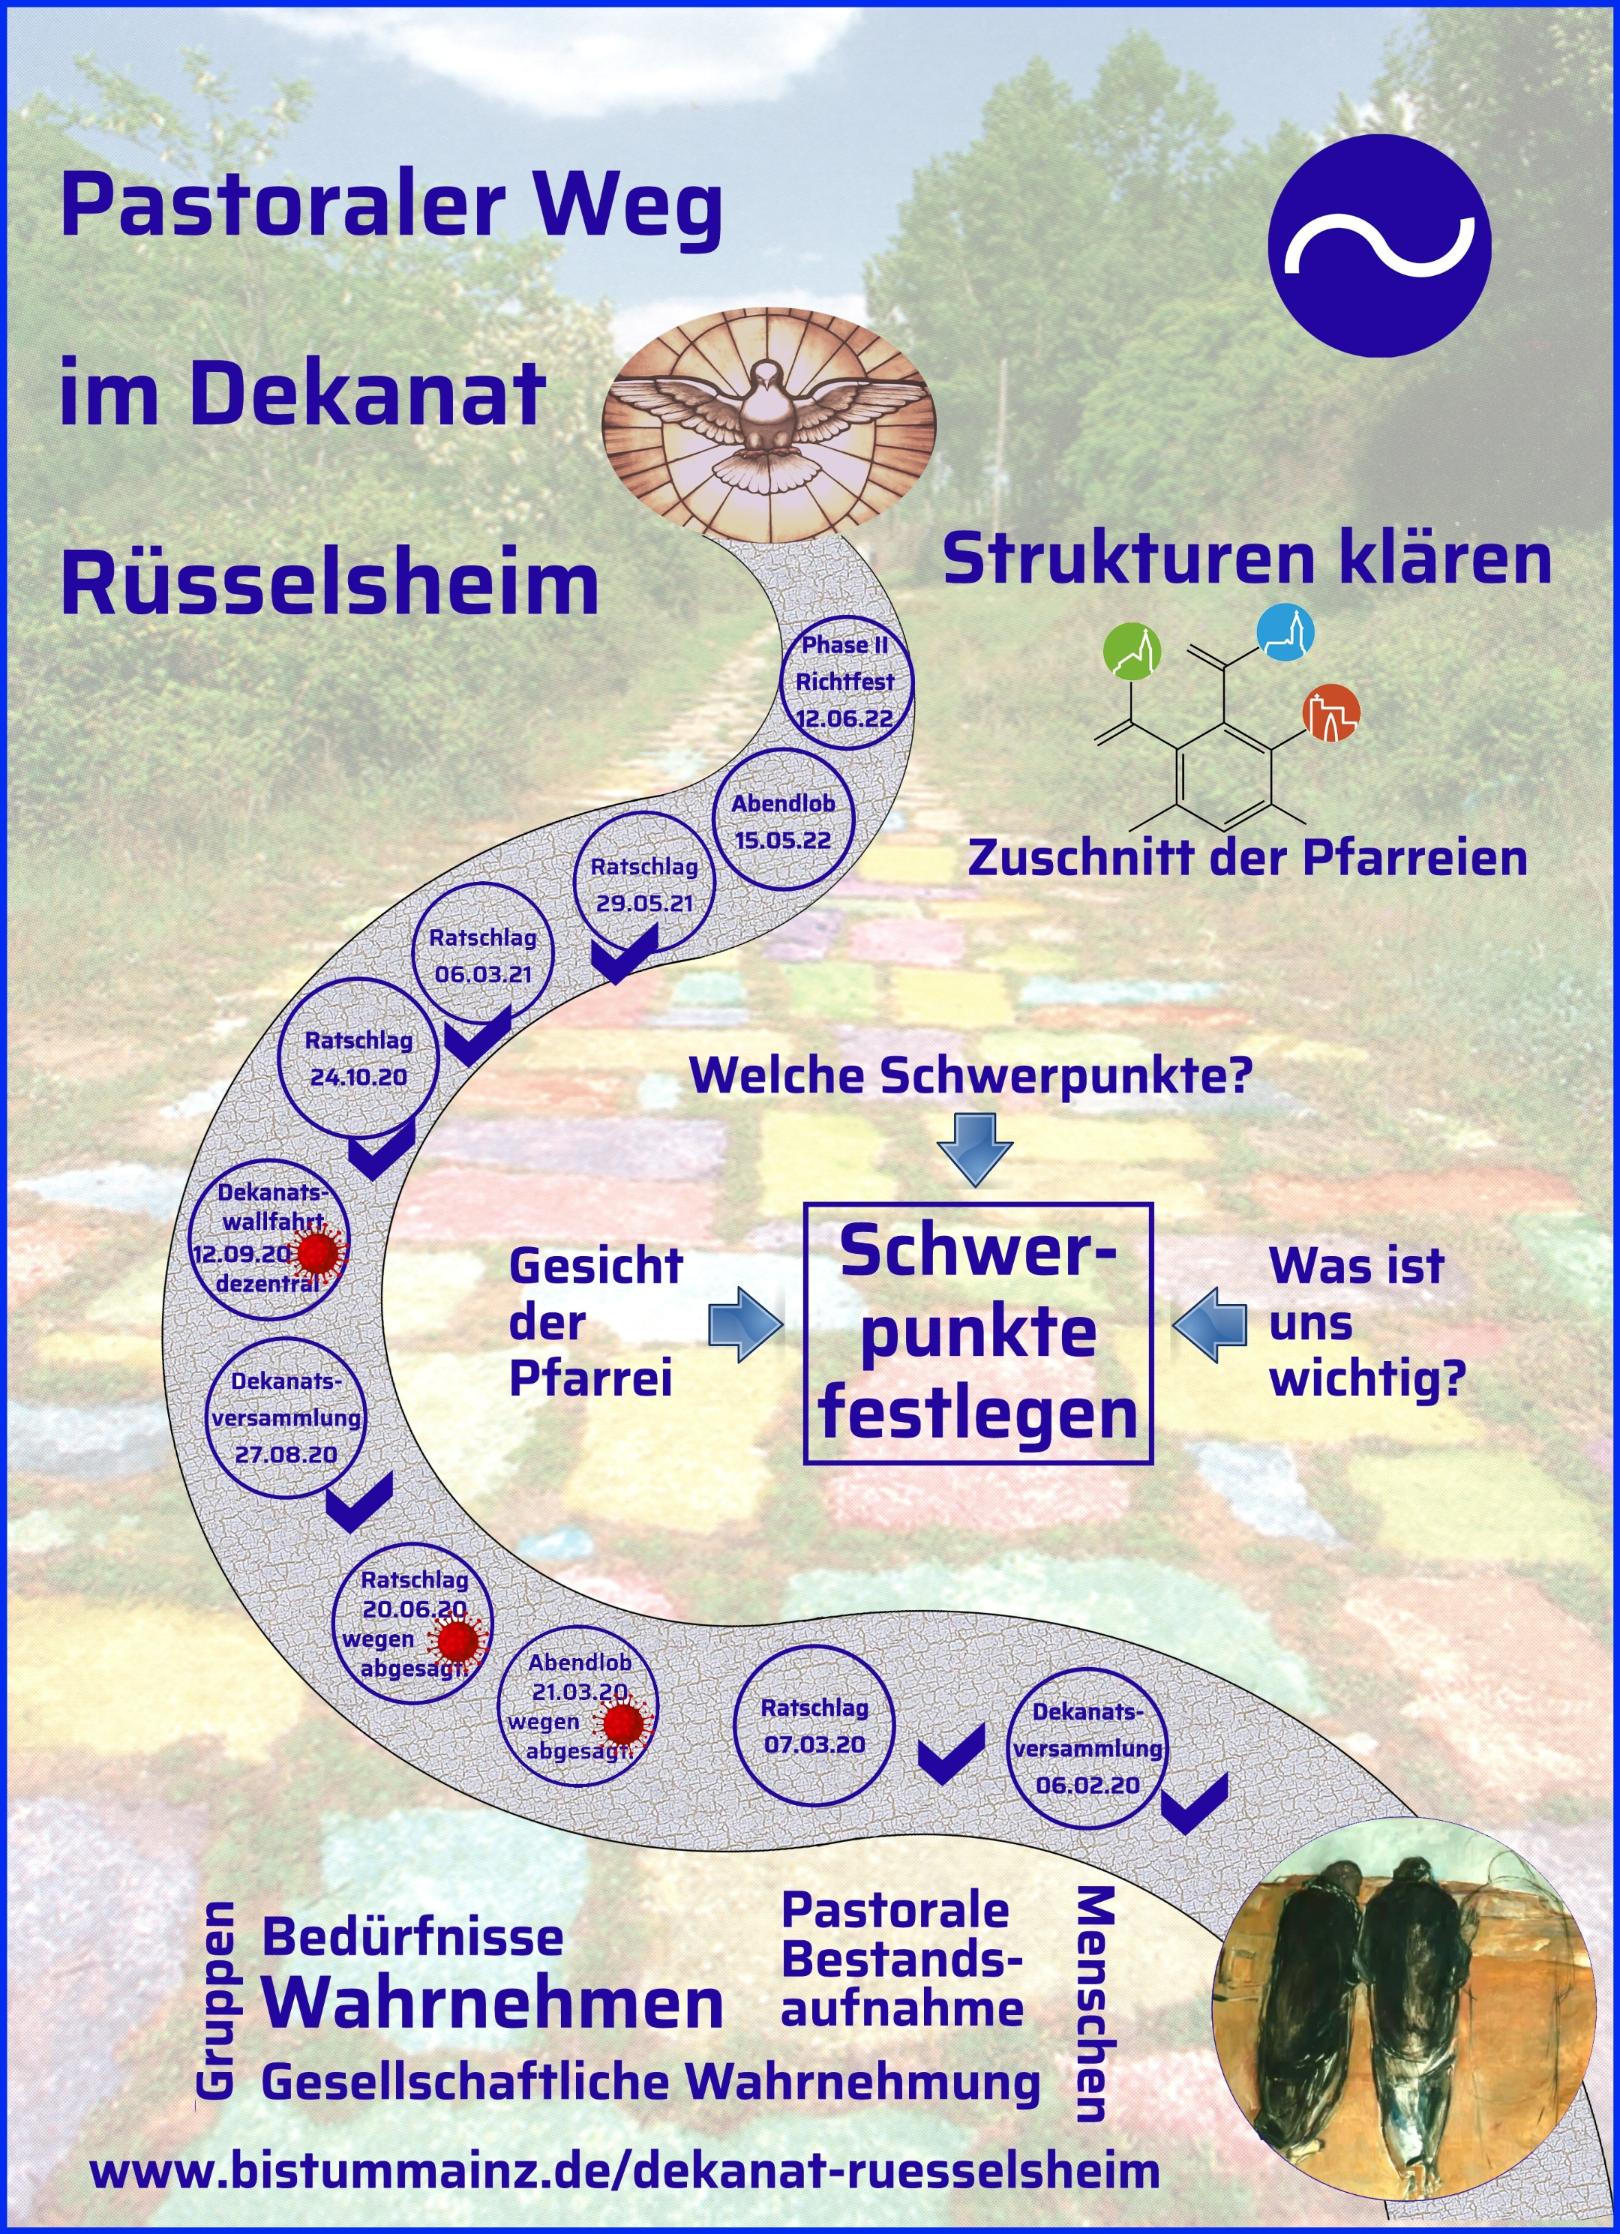 Pastoraler Weg  im Dekanat Rüsselsheim (c) Heinrich Witting